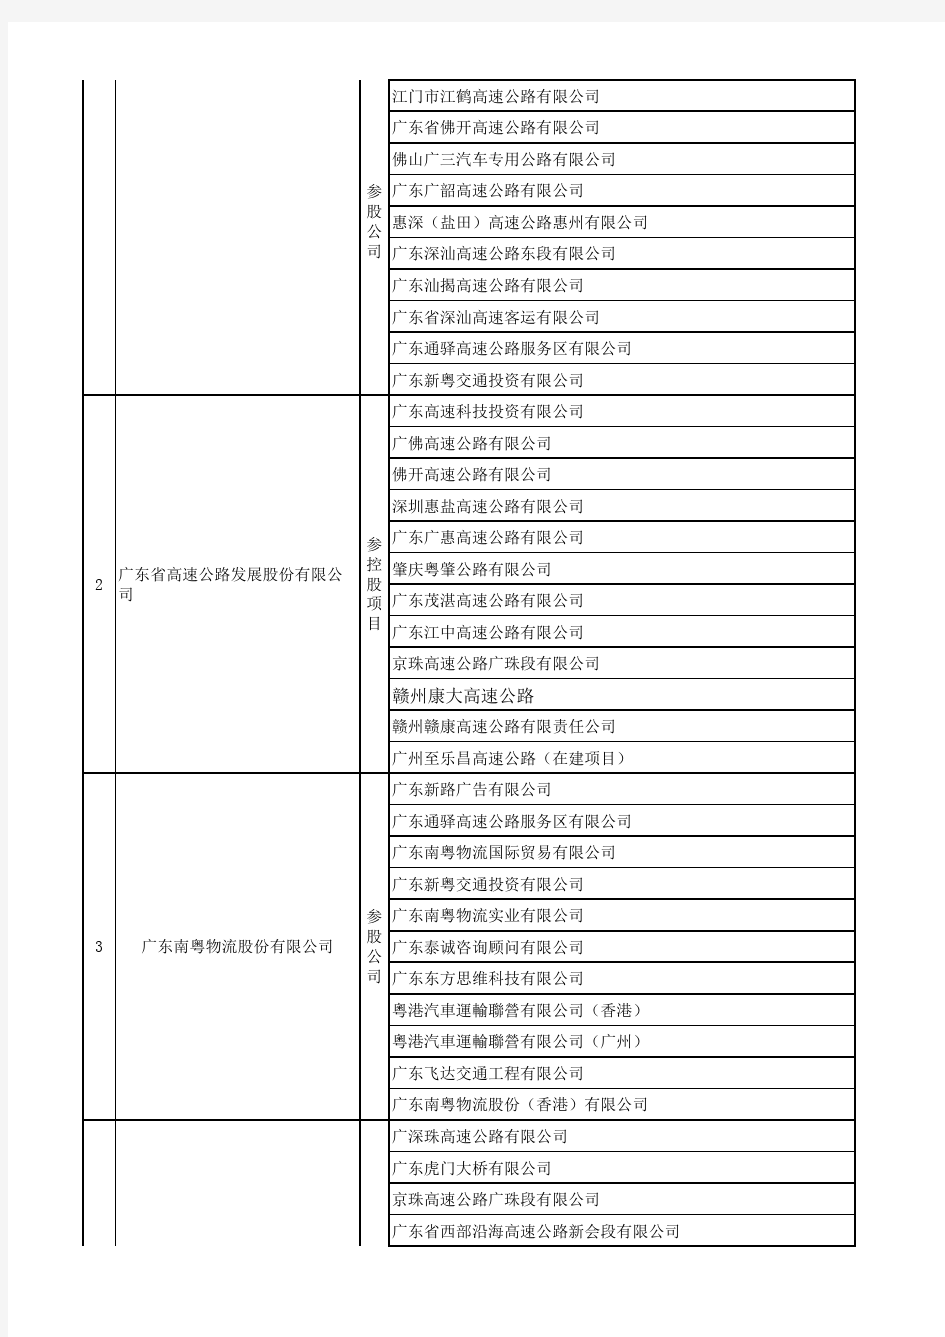 广东省交通集团有限公司组织结构表